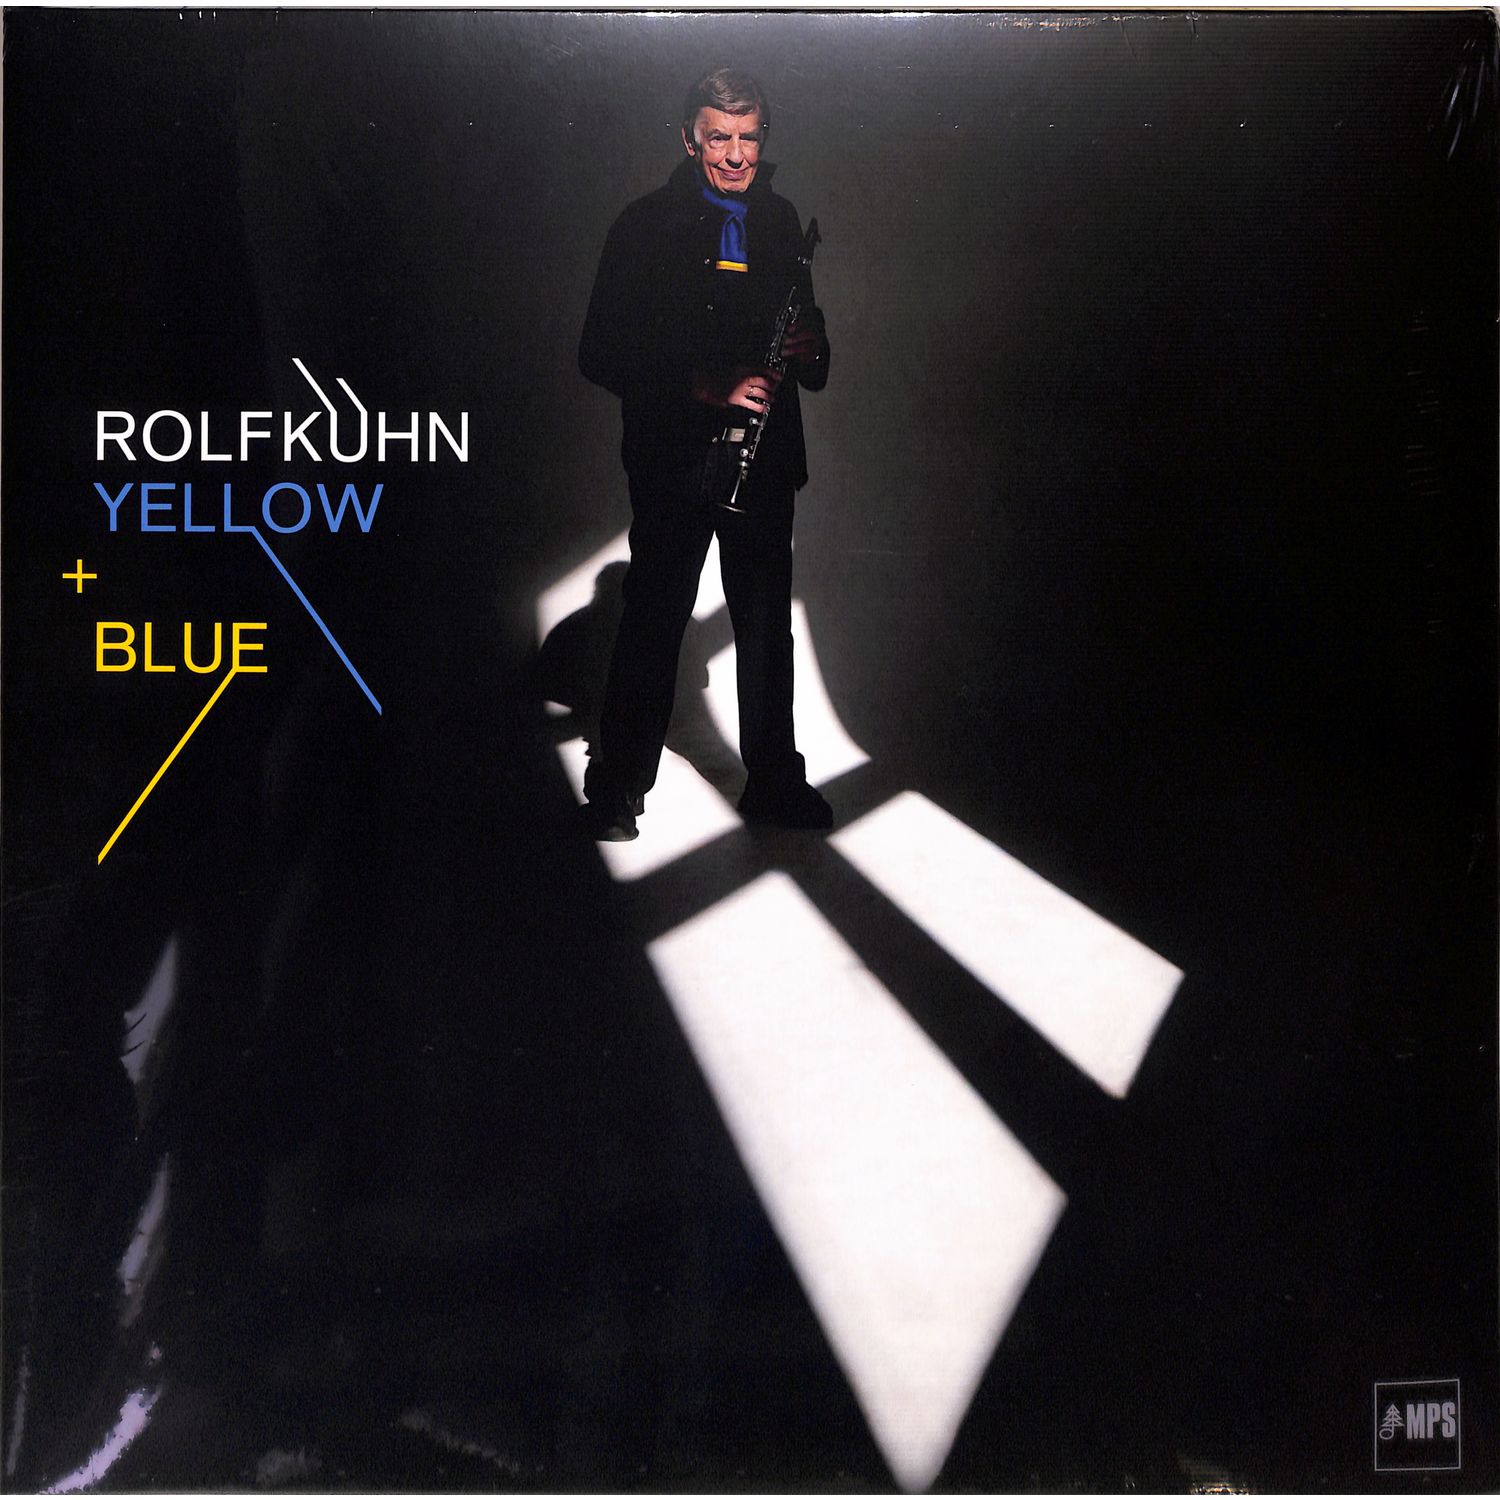 Rolf Khn - YELLOW + BLUE 